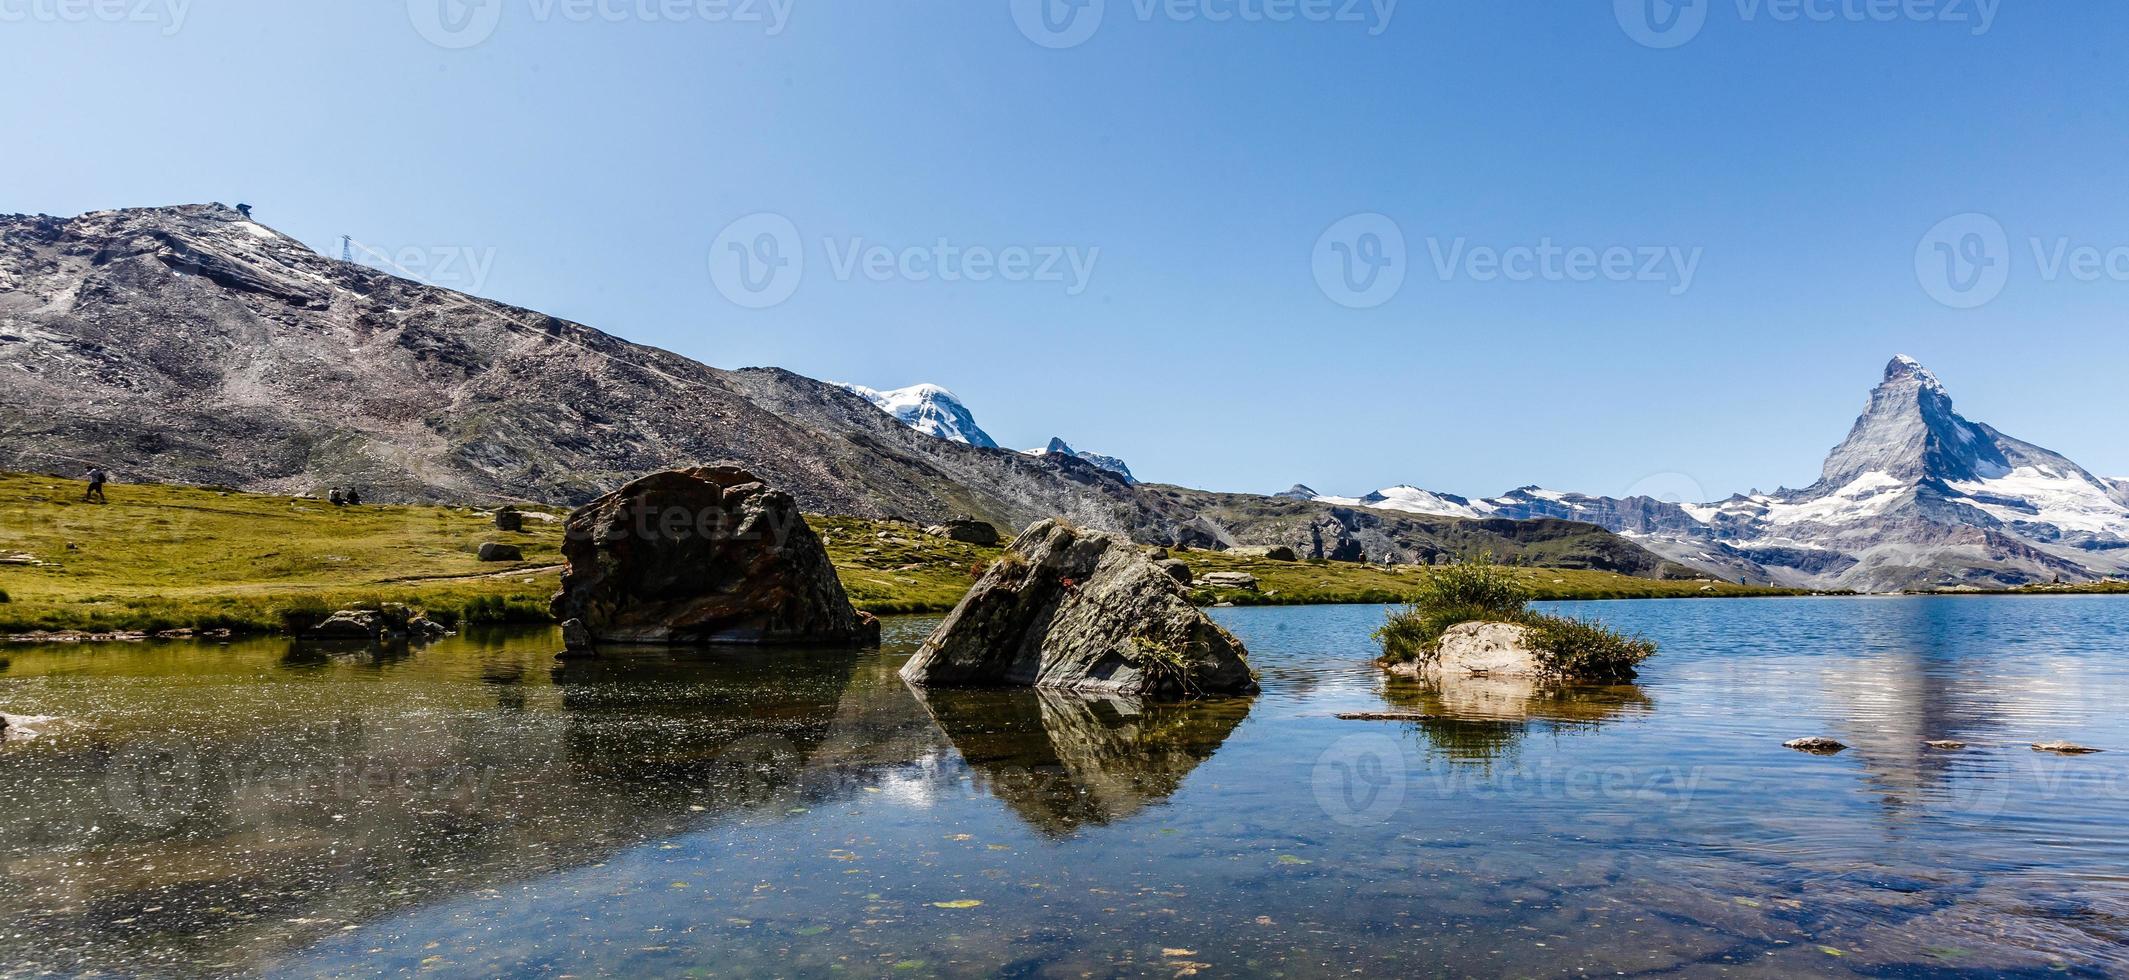 natureza incrível da suíça nos alpes suíços - fotografia de viagem foto